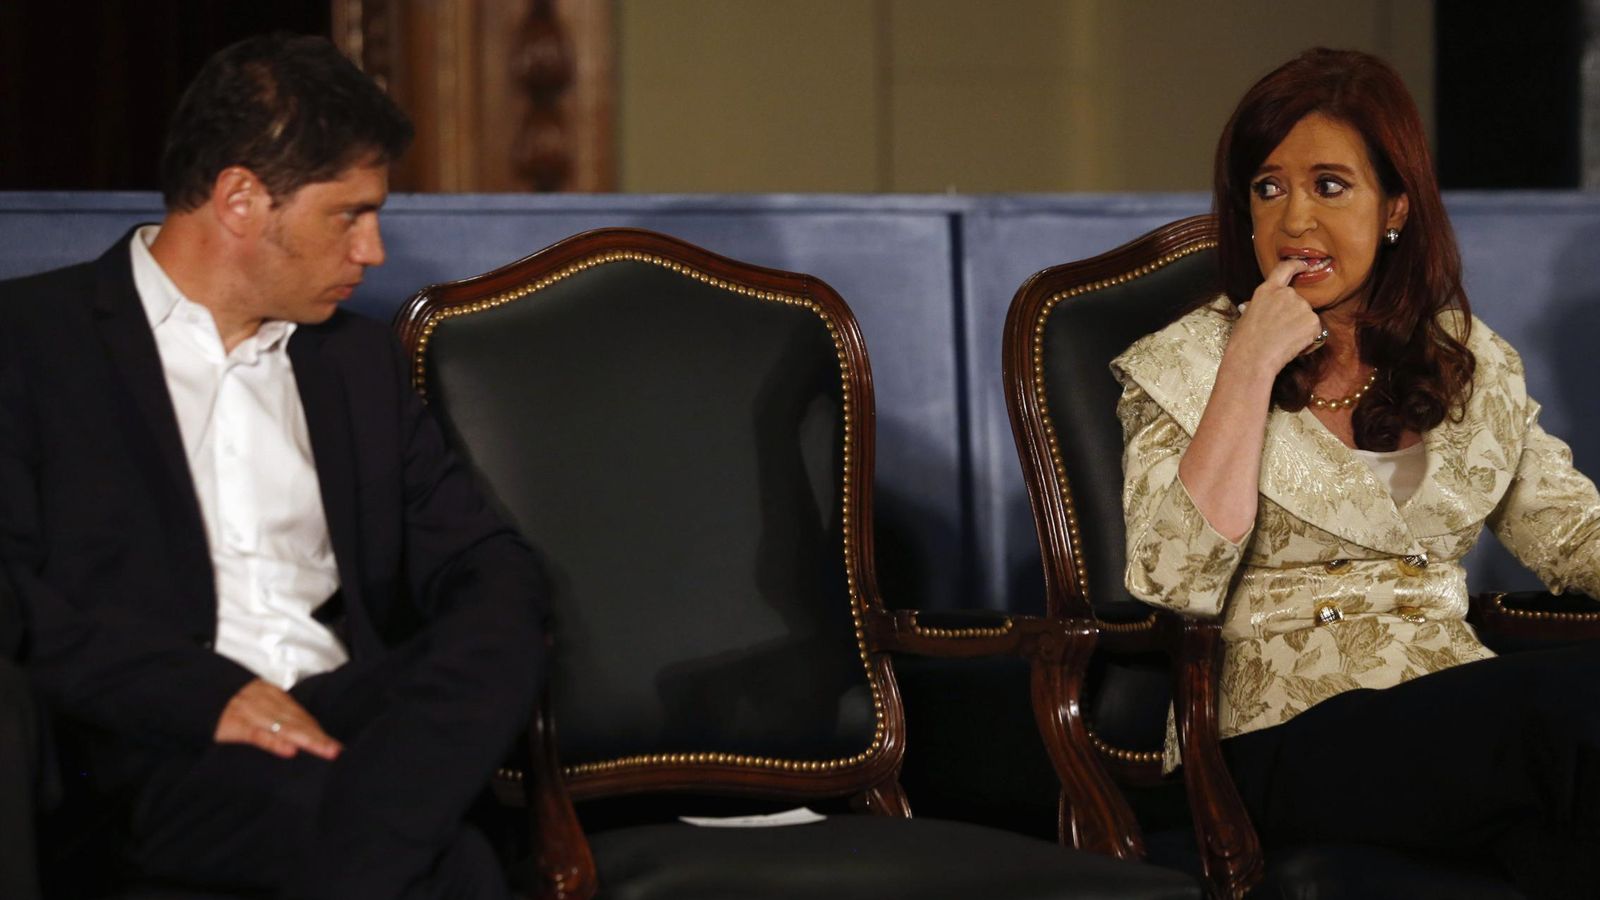 Foto: Cristina Fernández de Kirchner junto al ministro de Economía de Argentina, Axel Kicillof, durante una ceremonia en la Bolsa de Valores de Buenos Aires. REUTERS / Marcos Brindicci